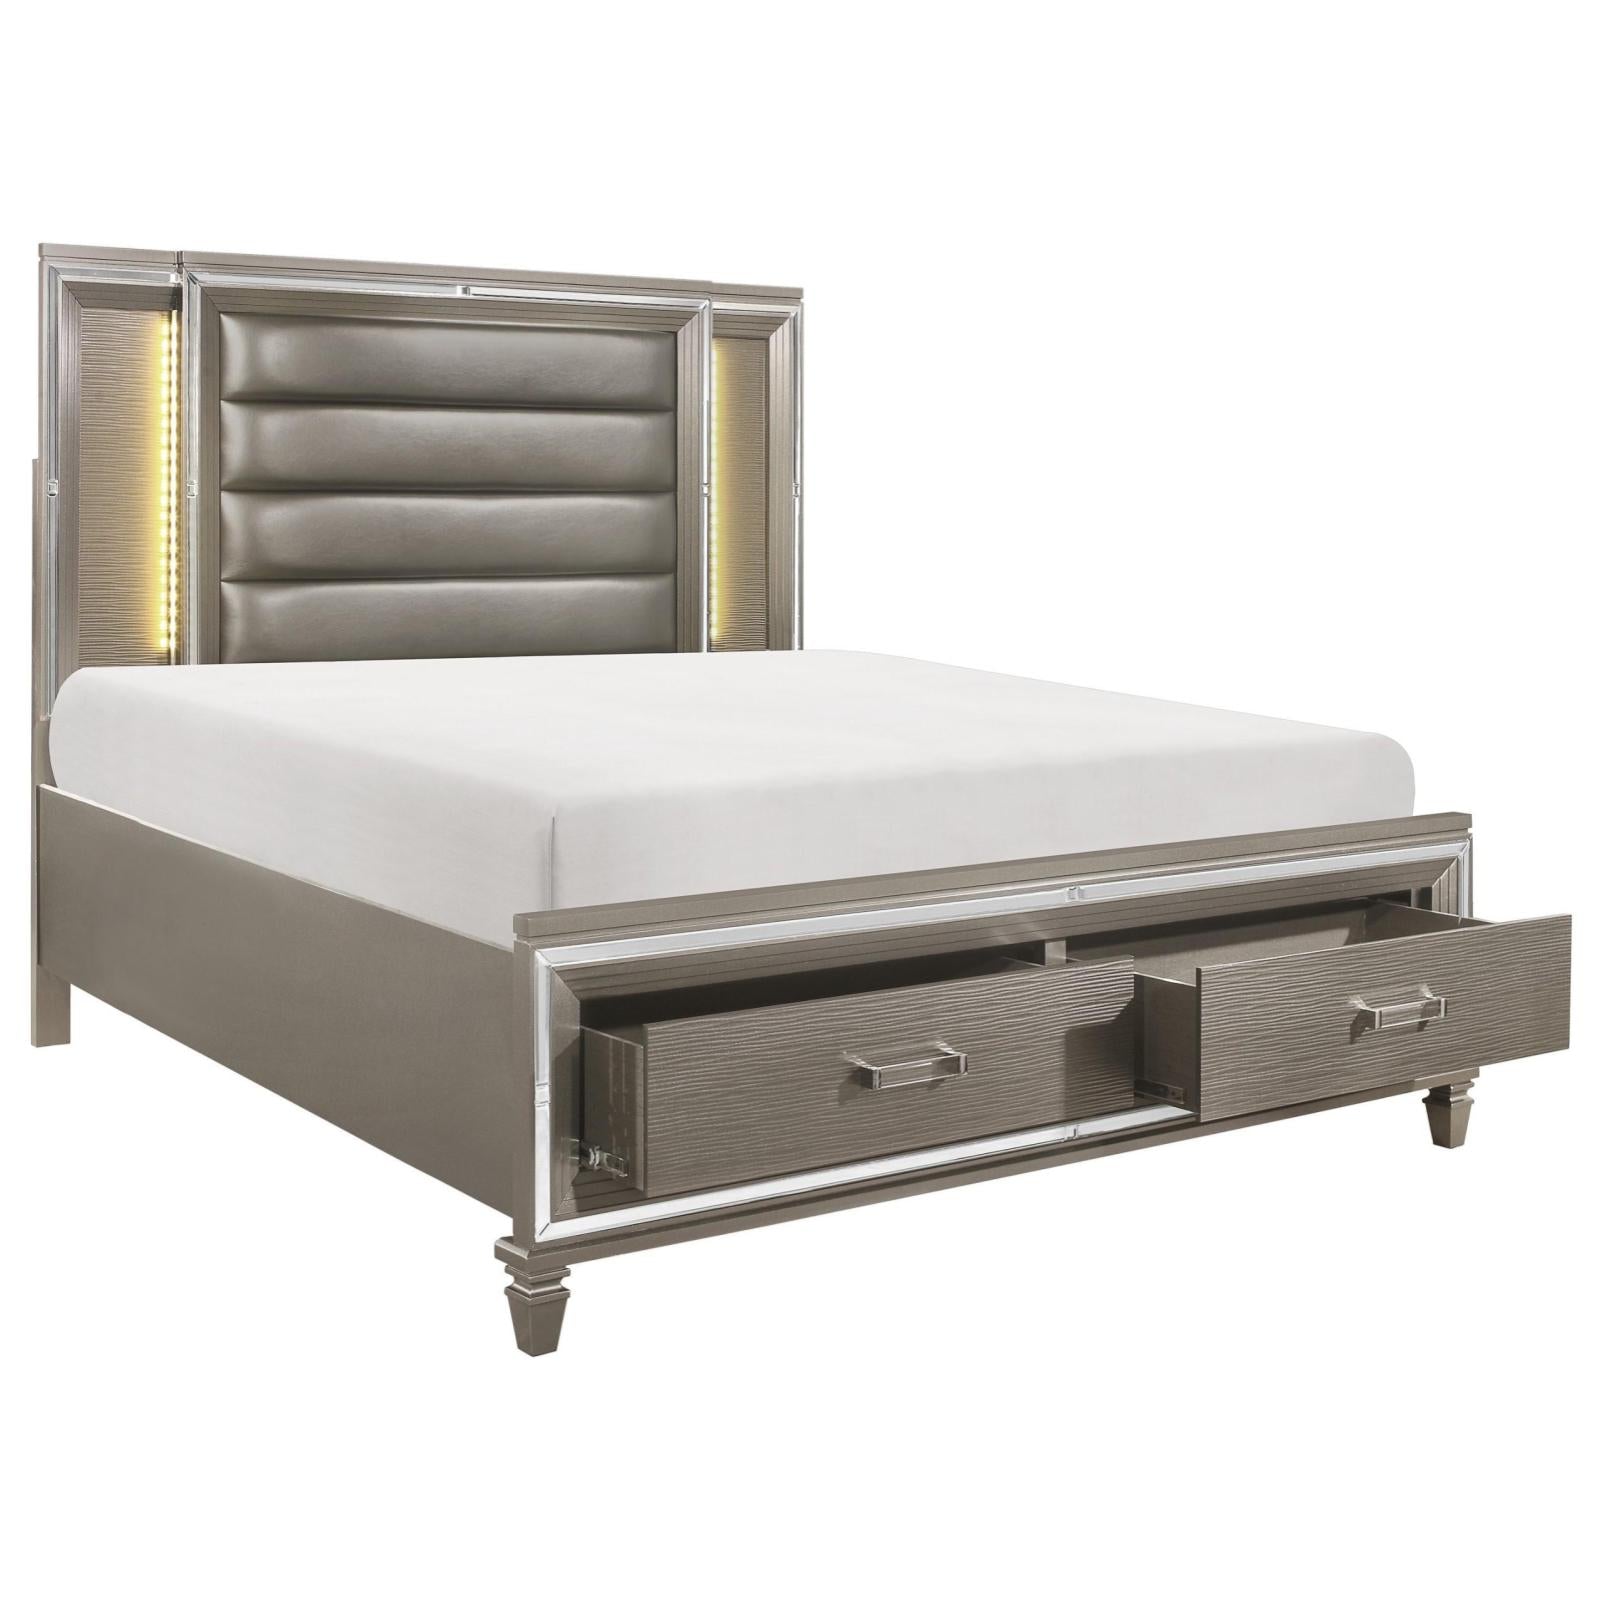 Tasmin Queen Grey Storage Bed